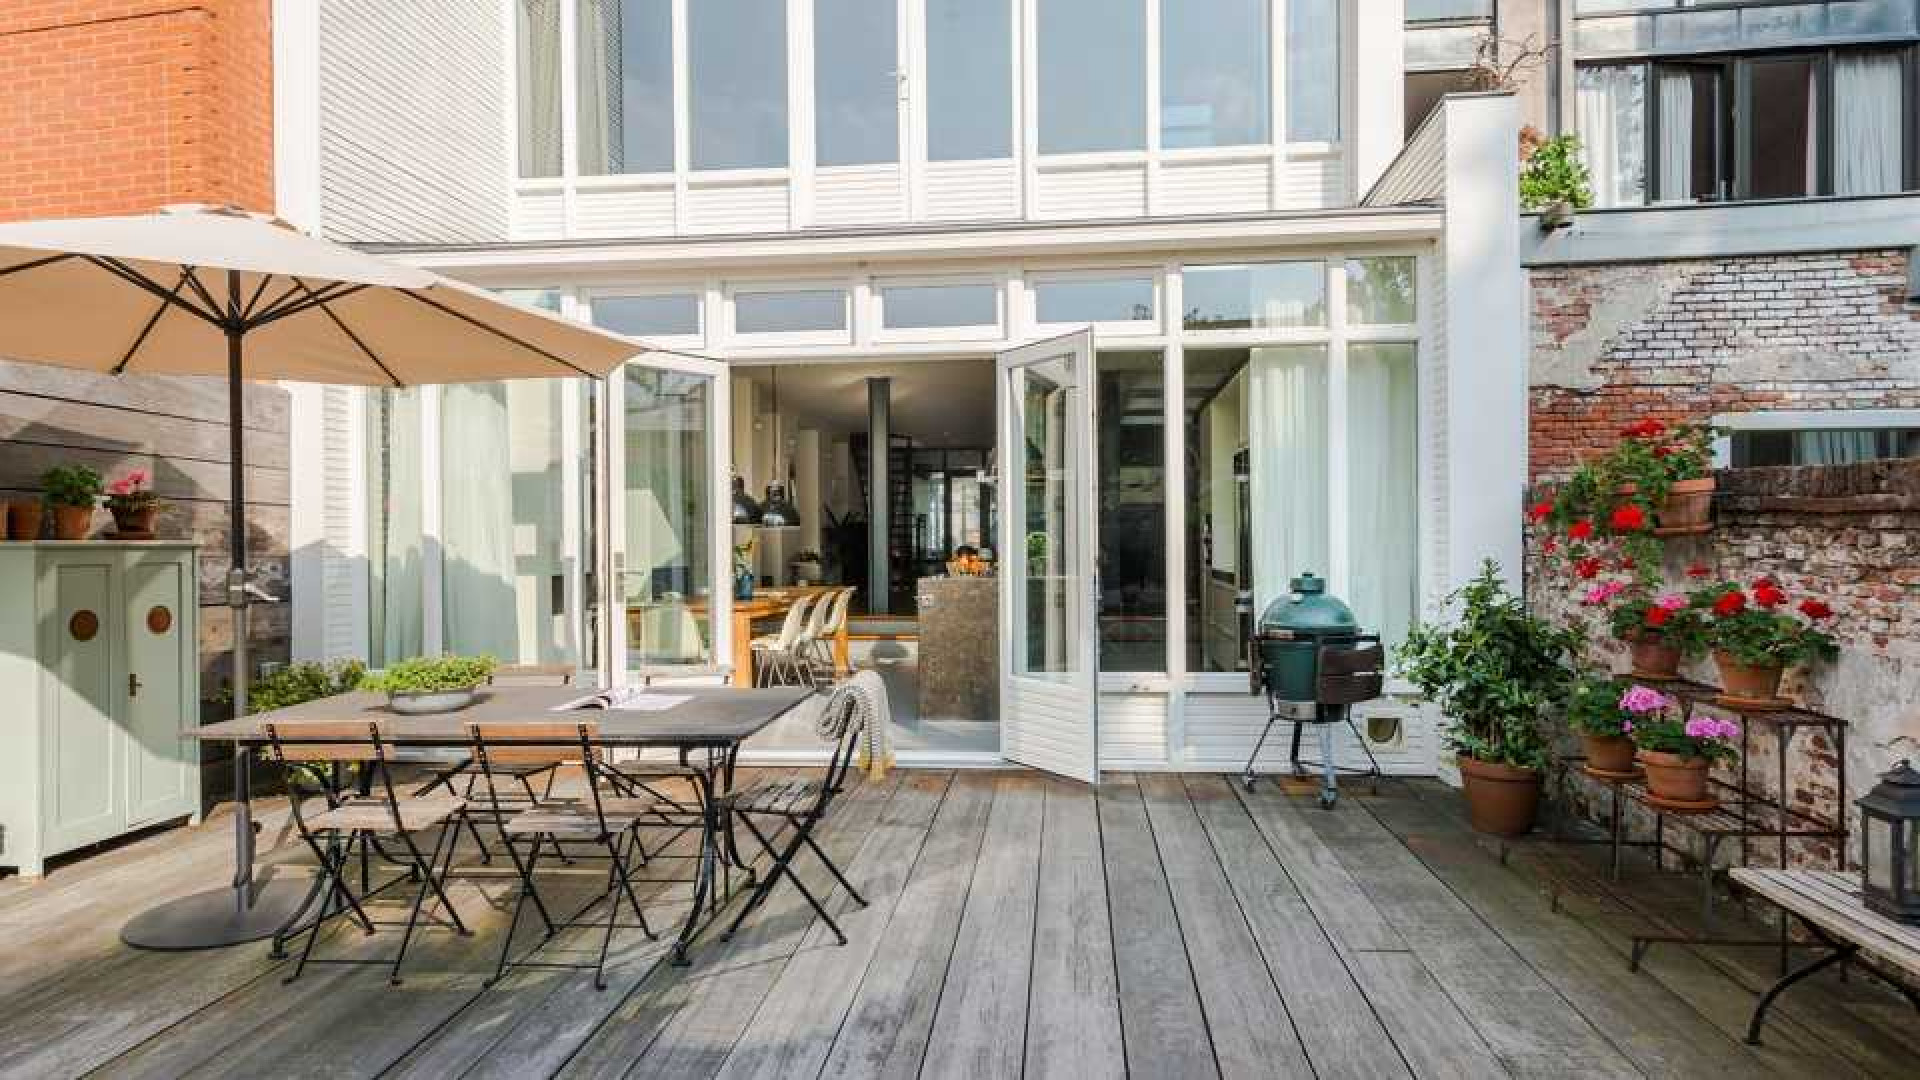 Ex Jiskefet acteur Kees Prins verkoopt zijn Amsterdamse huis met meer dan 1 miljoen euro winst! Zie foto's 23